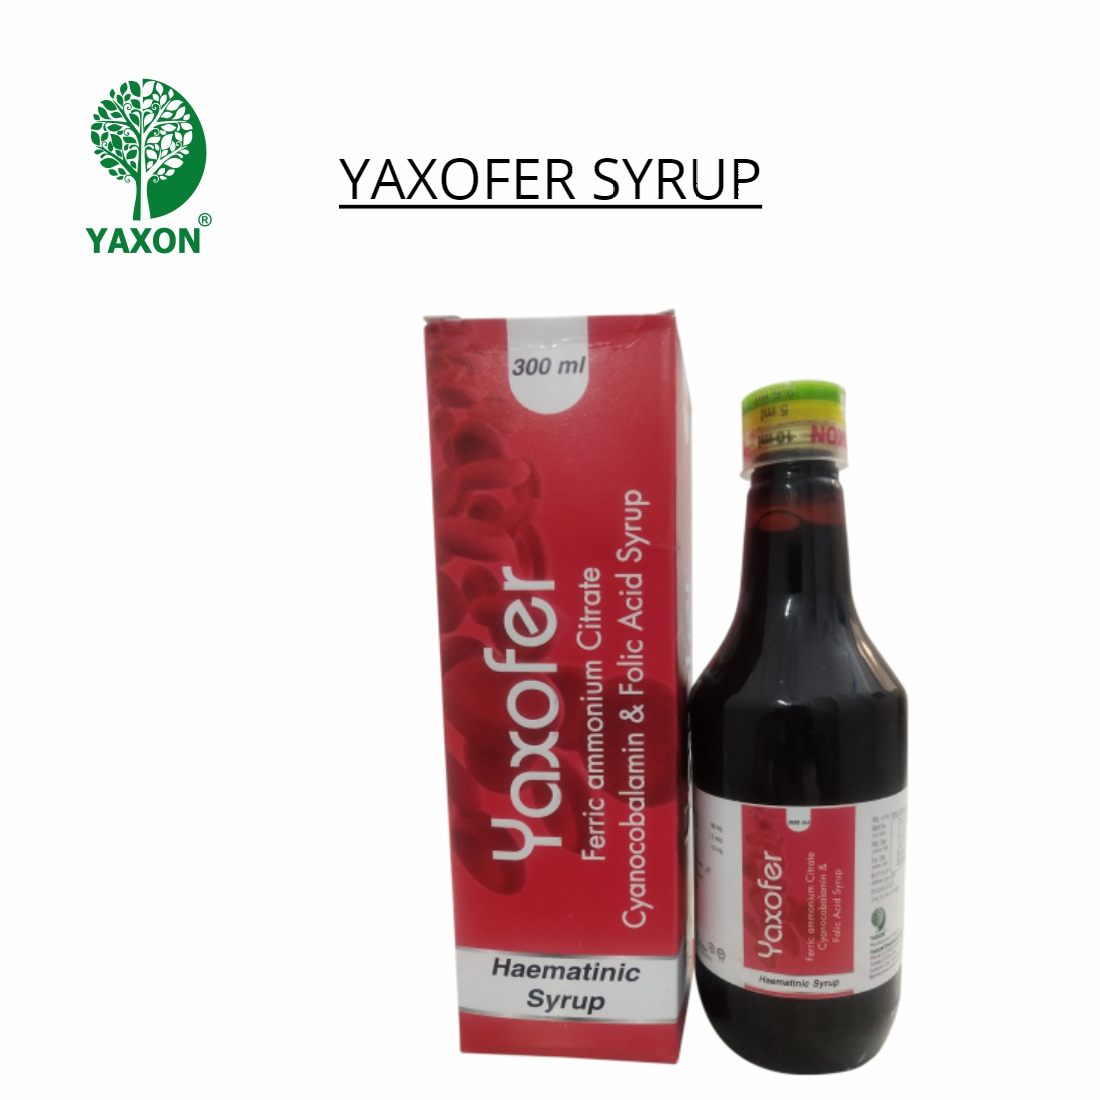 YAXON YAXOFER Hematinic Syrup 300ml